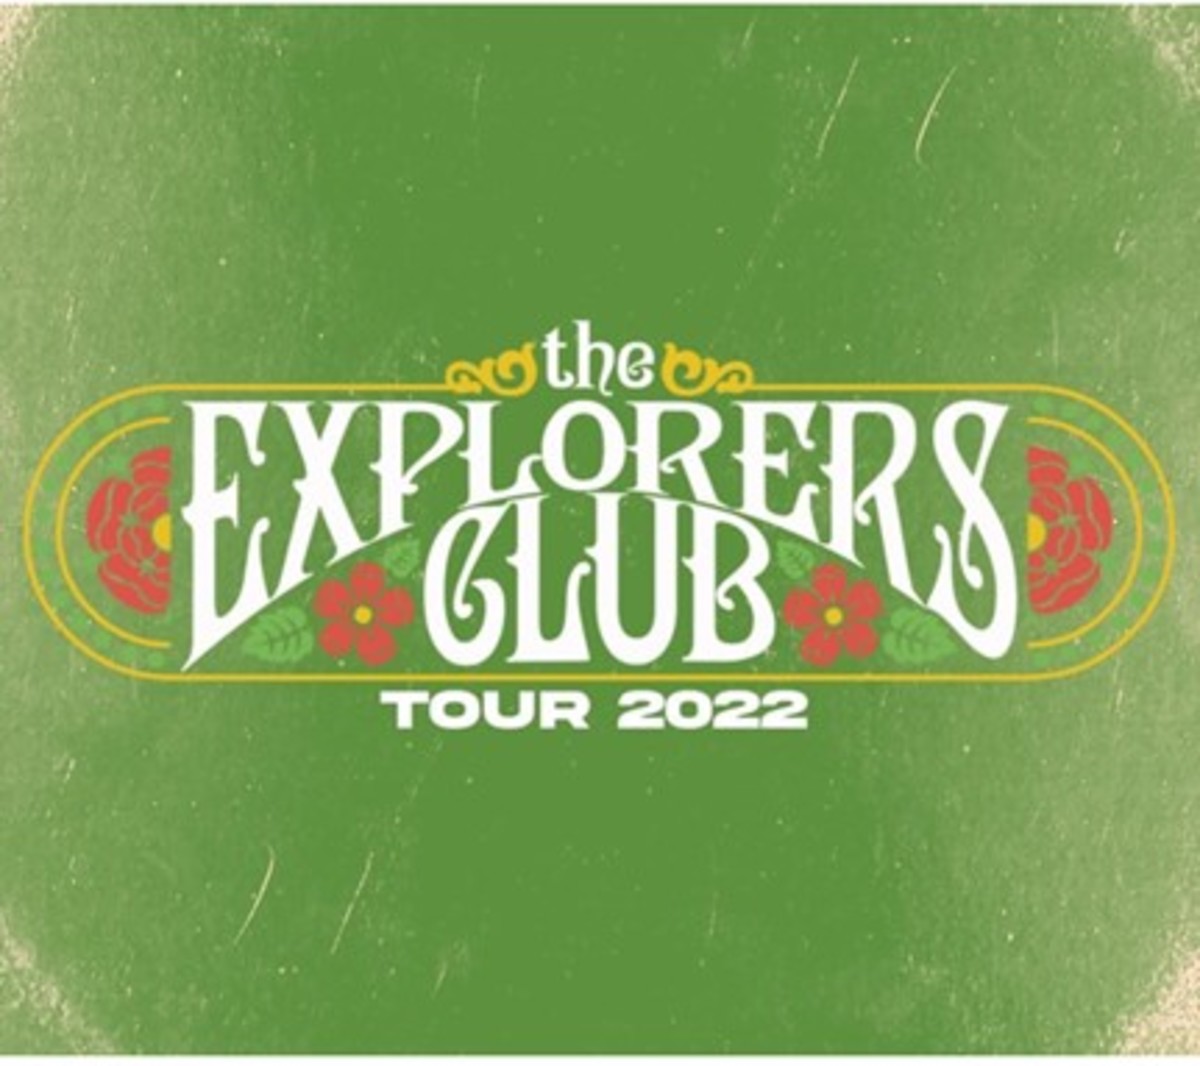 Explorers Club tour